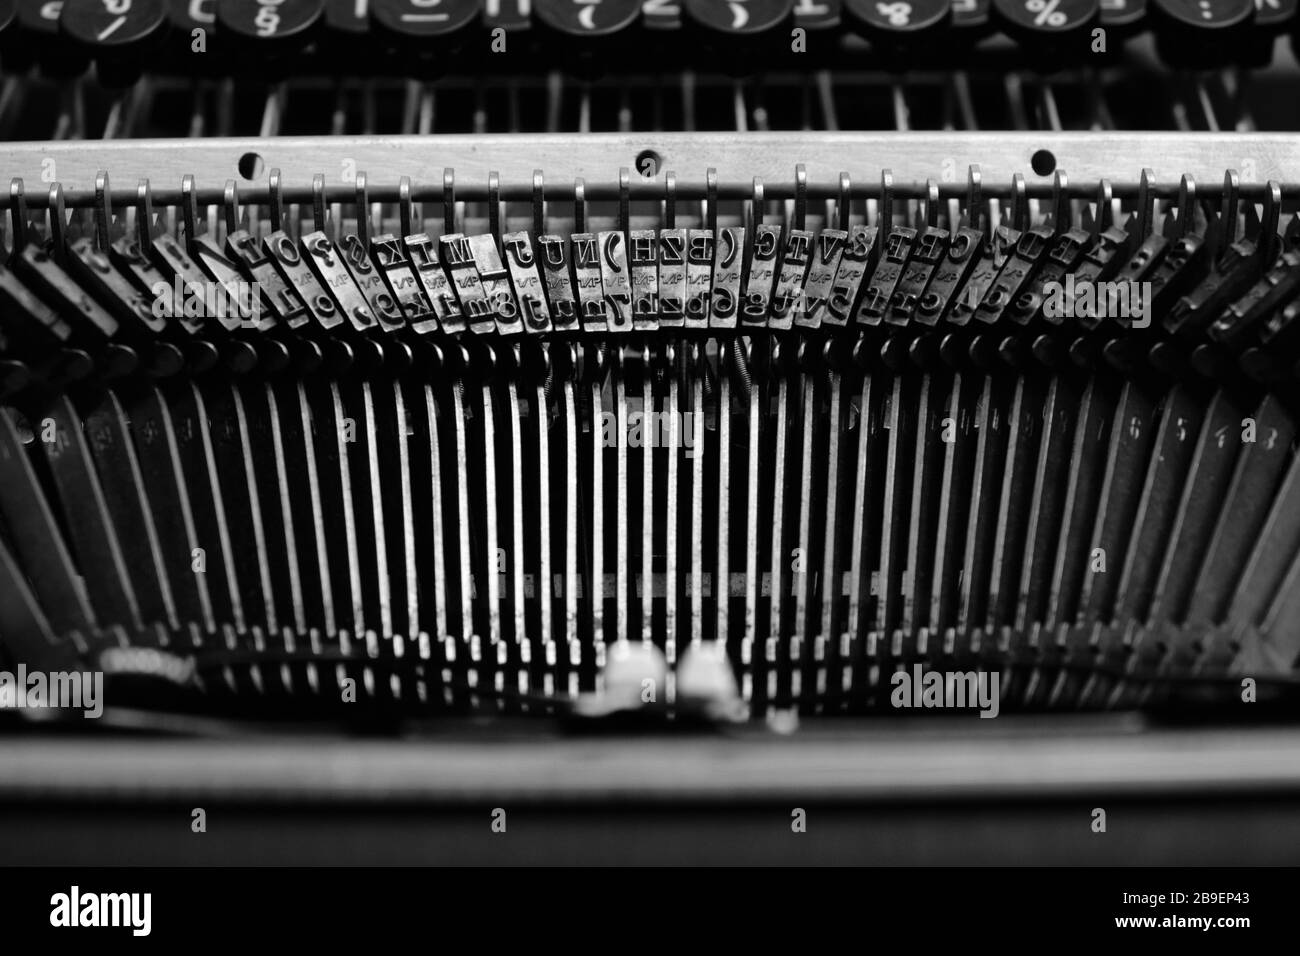 Mechanismus zum Typisieren von Streikenden mit dem englischen Alphabet in einer alten Retro-Schreibmaschine Stockfoto